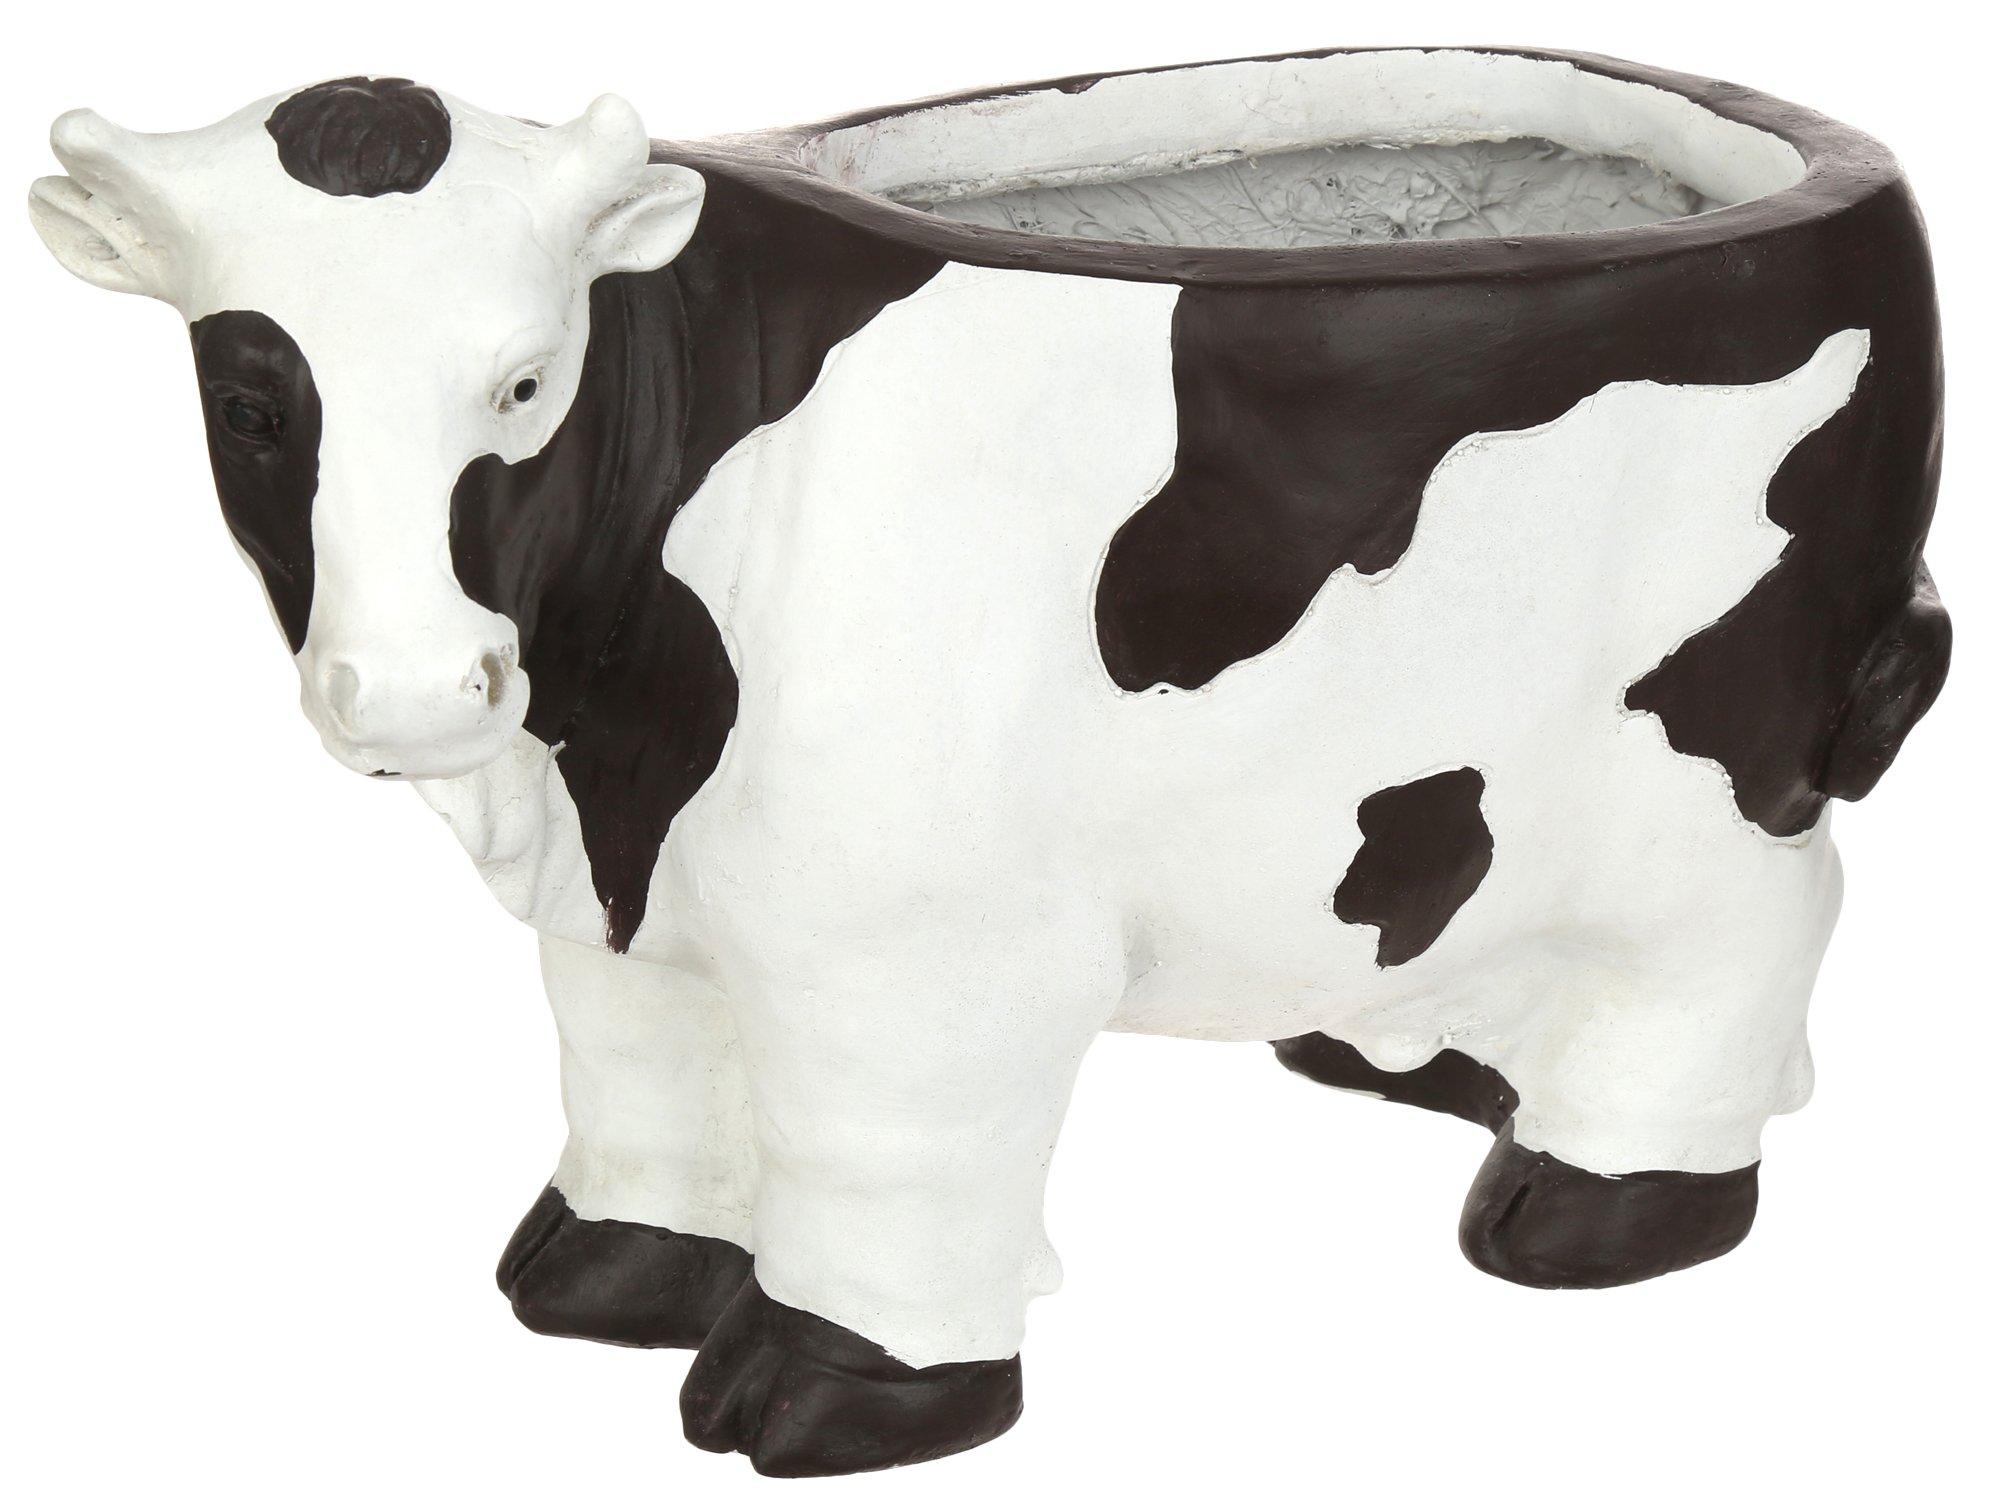 15in Ceramic Cow Planter